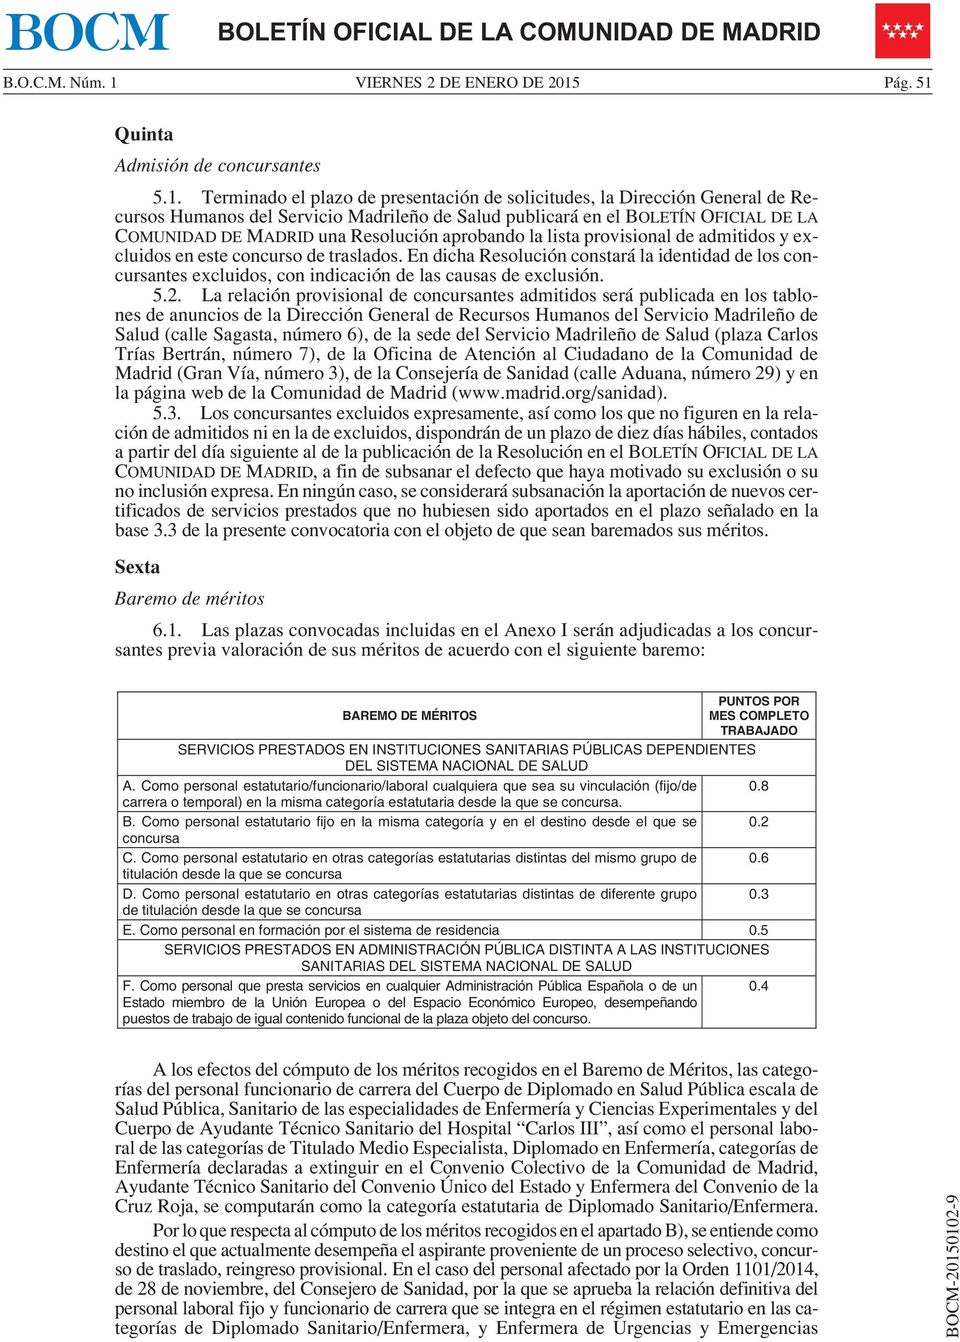 Terminado el plazo de presentación de solicitudes, la Dirección General de Recursos Humanos del Servicio Madrileño de Salud publicará en el BOLETÍN OFICIAL DE LA COMUNIDAD DE MADRID una Resolución